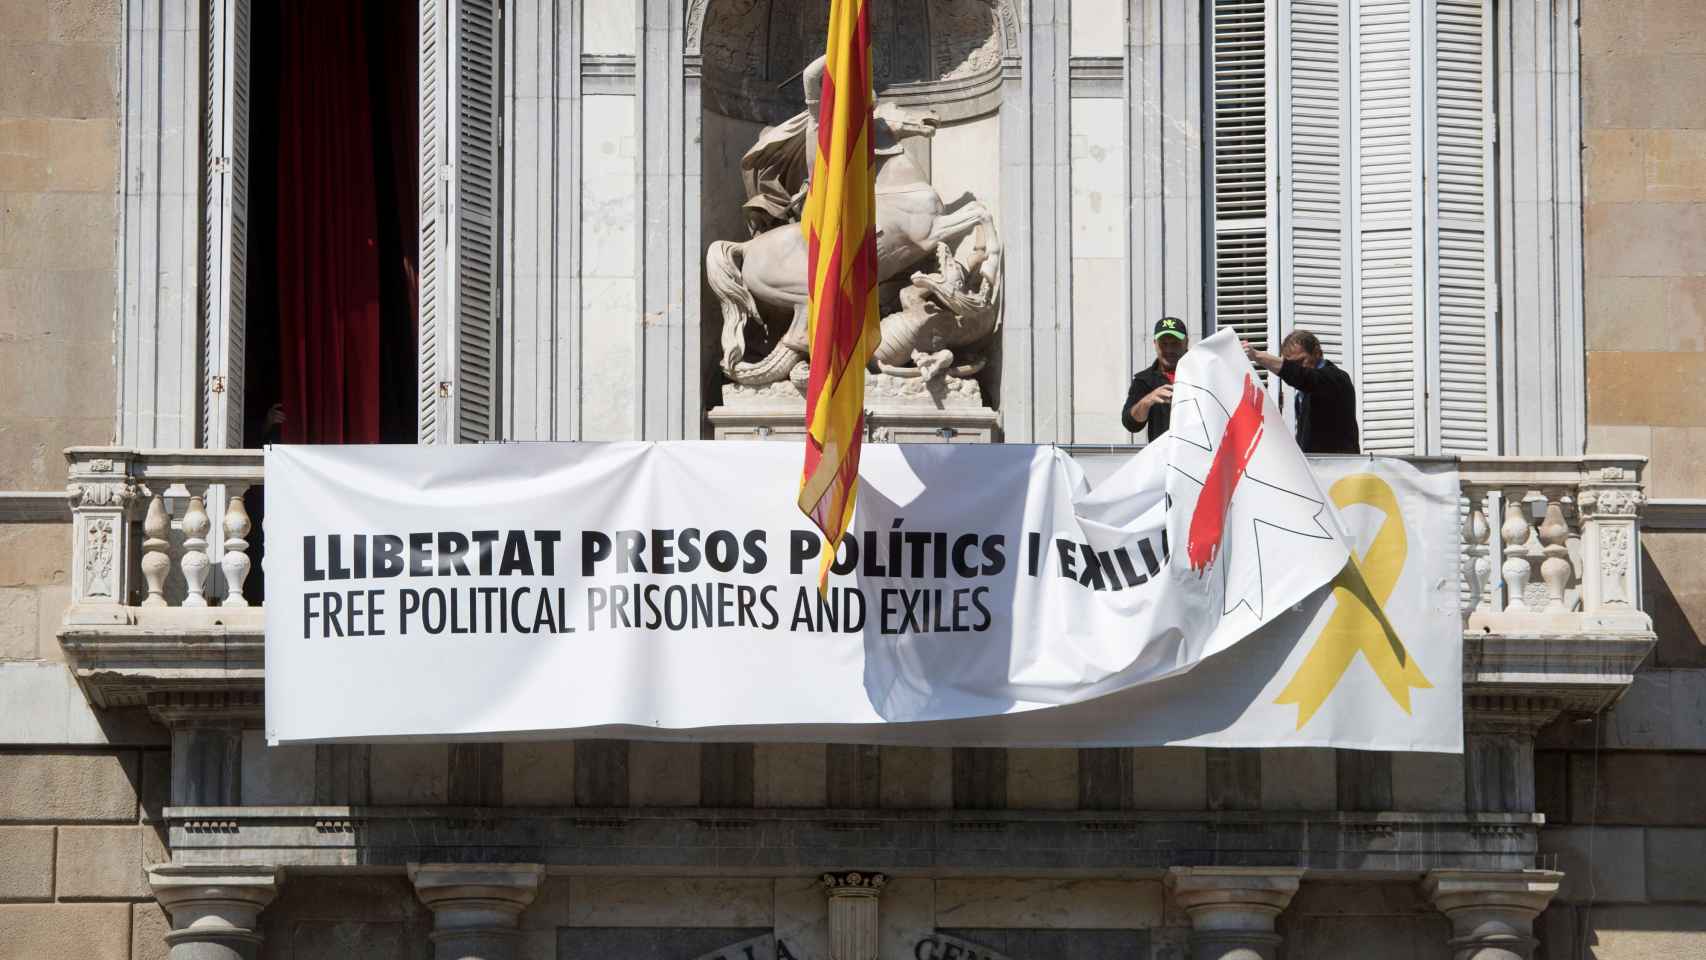 Momento en el que personal de la Generalitat quita la simbología independentista del Palau de la Generalitat / Irrelevancia EFE